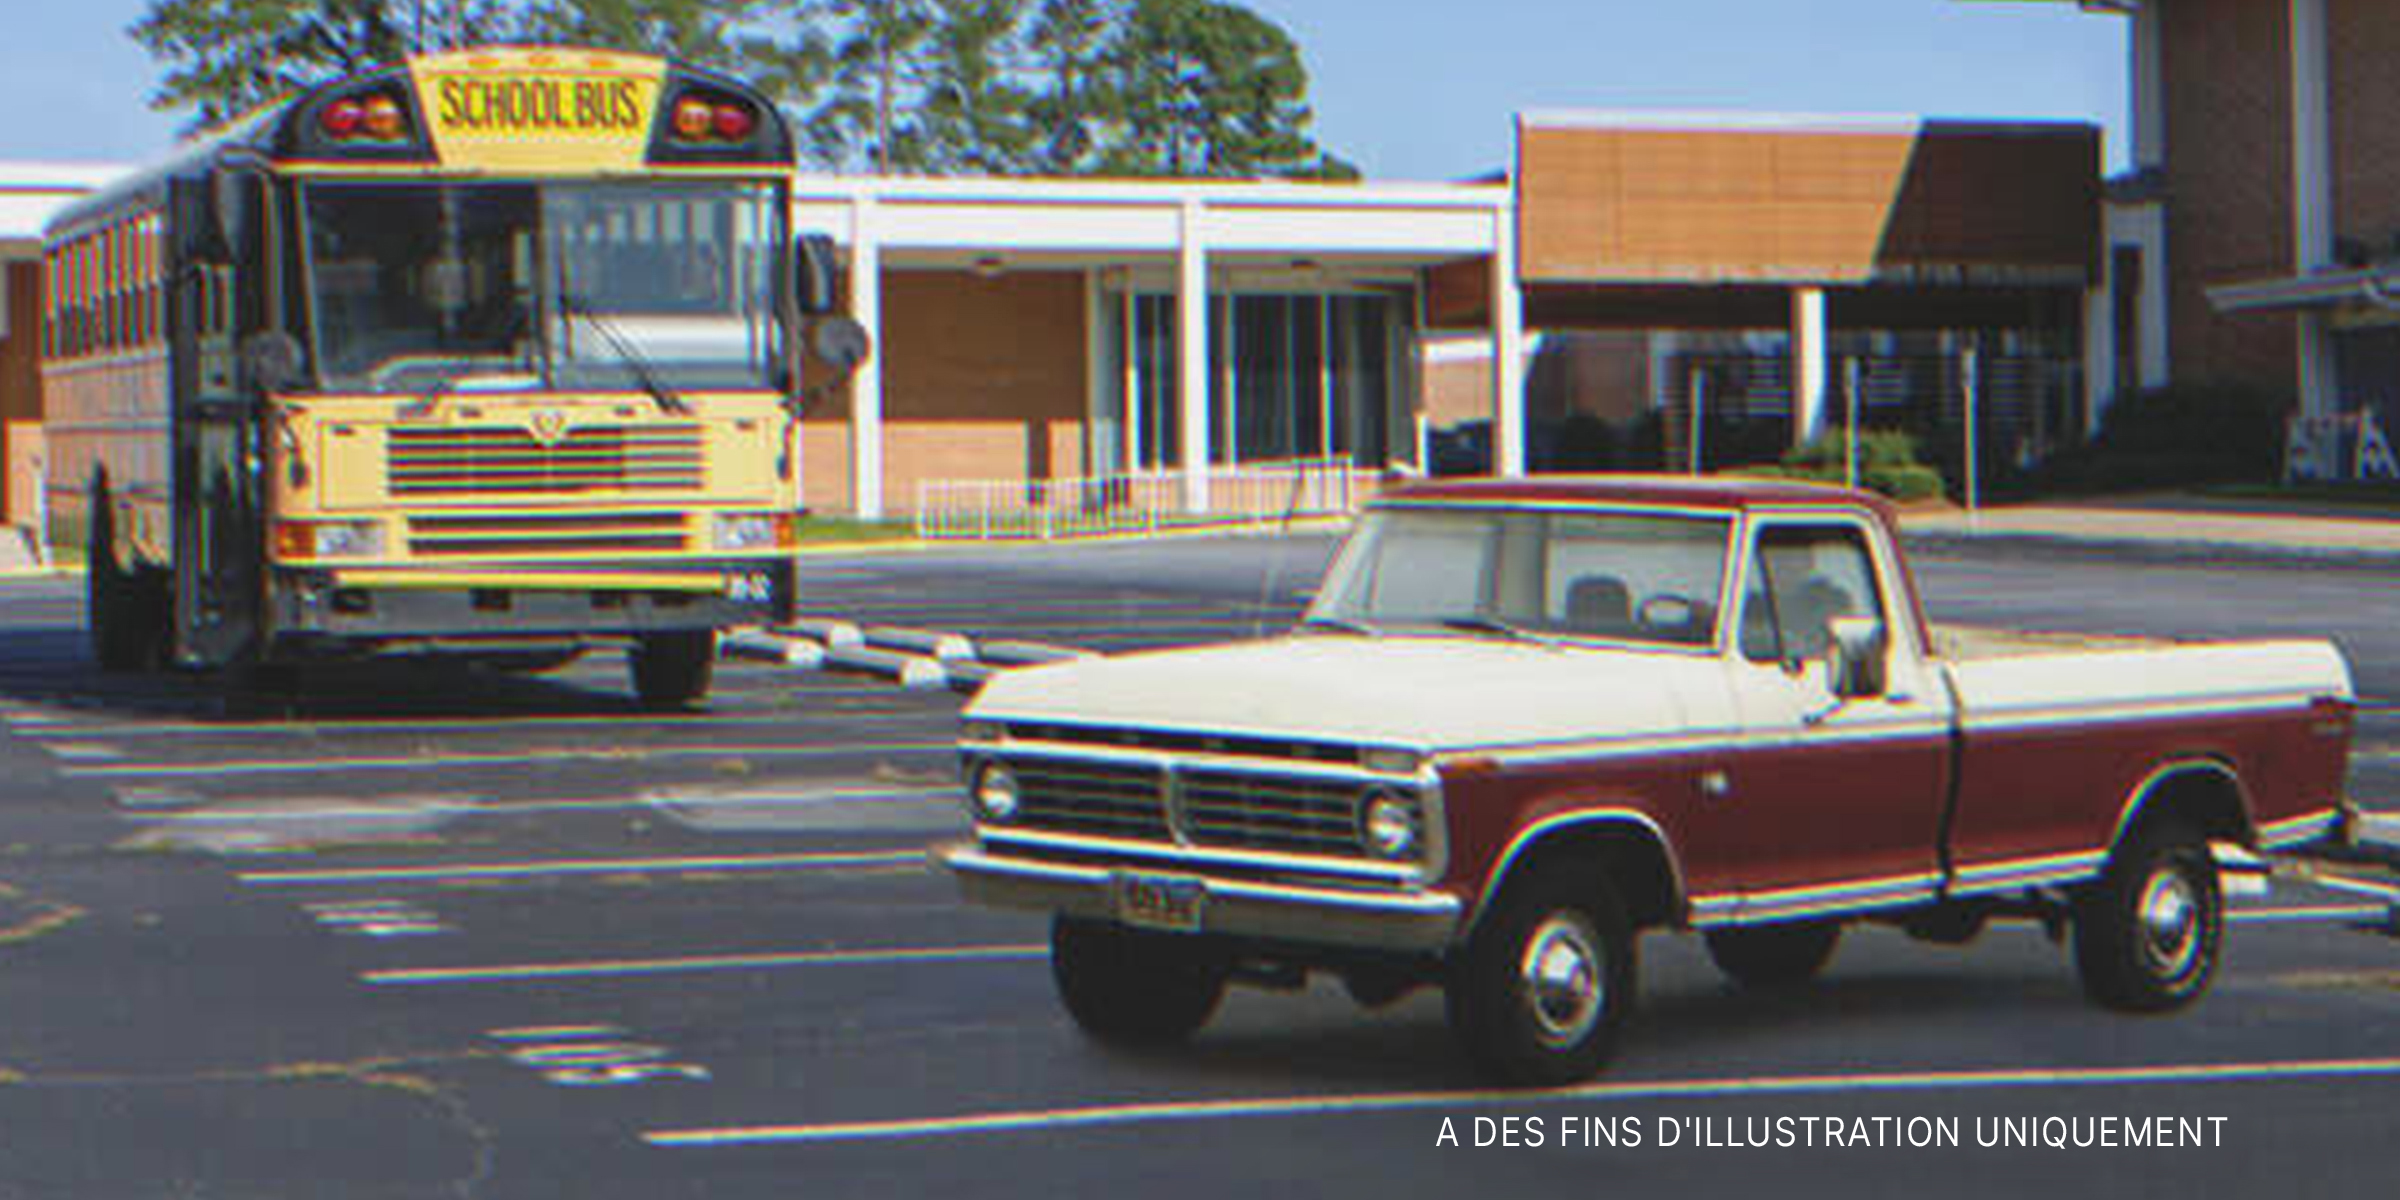 Un vieux pick-up sur le parking de l'école | Source : Flickr / Alabama Extension (Public Domain) Flickr / Crown Star Images (CC BY 2.0)